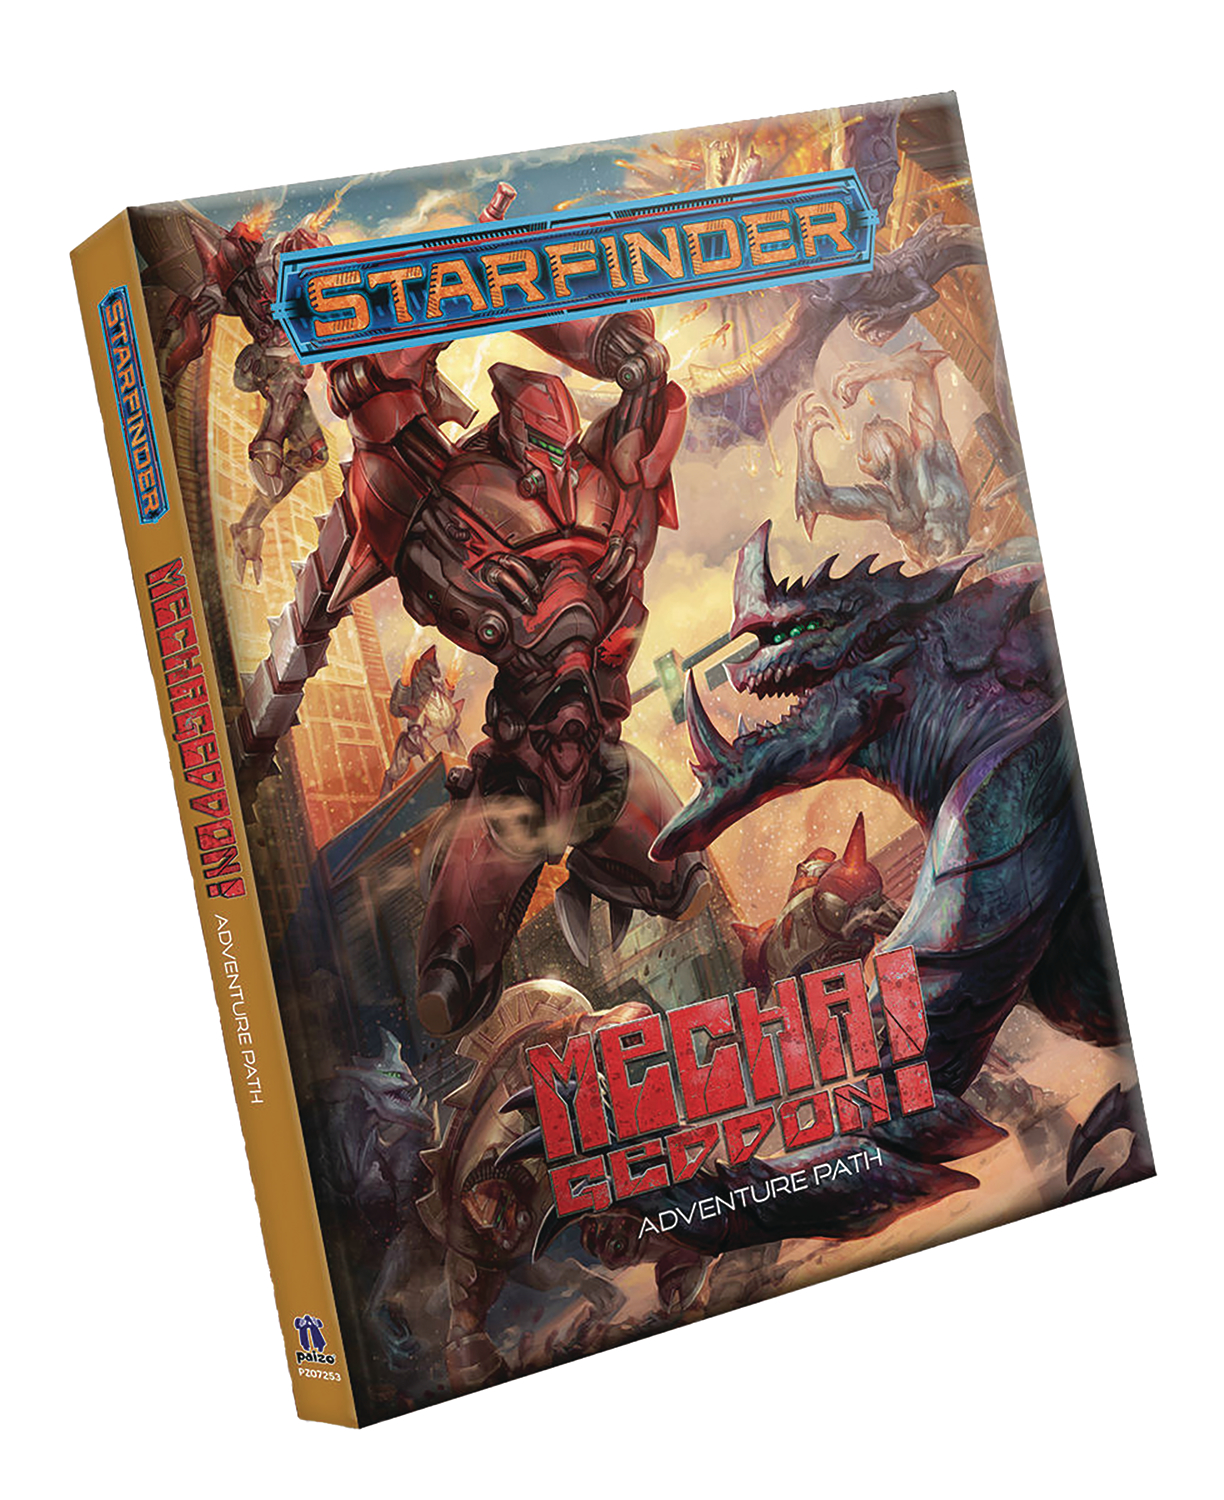 Starfinder RPG Mechageddon Adventure Path Hardcover